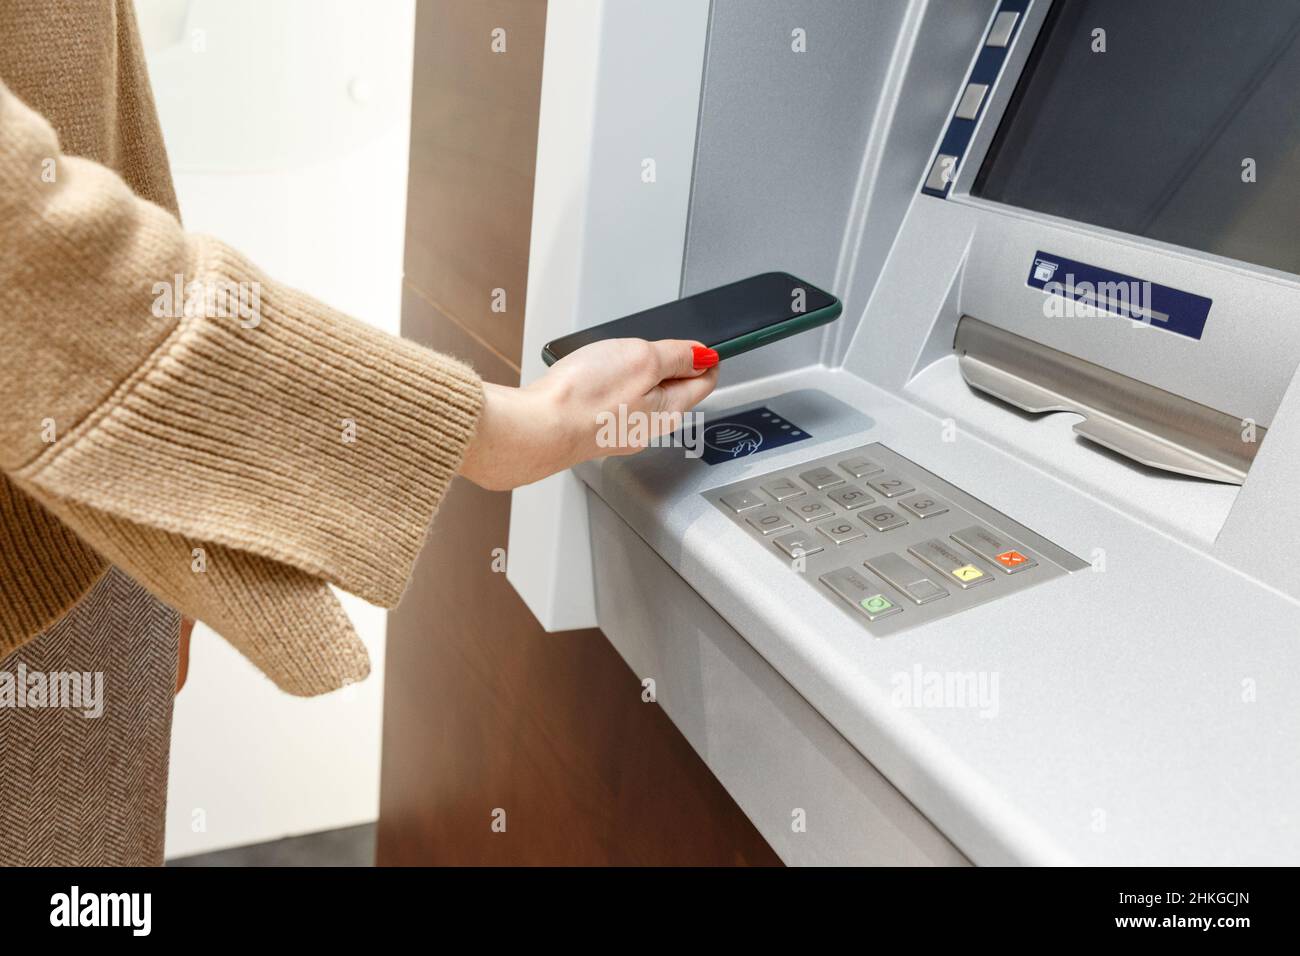 Weibliche Hand mit Mobiltelefon, das Geld vom geldautomaten abzieht, mit dem kontaktlosen NFC-wi-Fi-Bezahlsystem. Drahtlose Authentifizierung und Datenübertragung Stockfoto